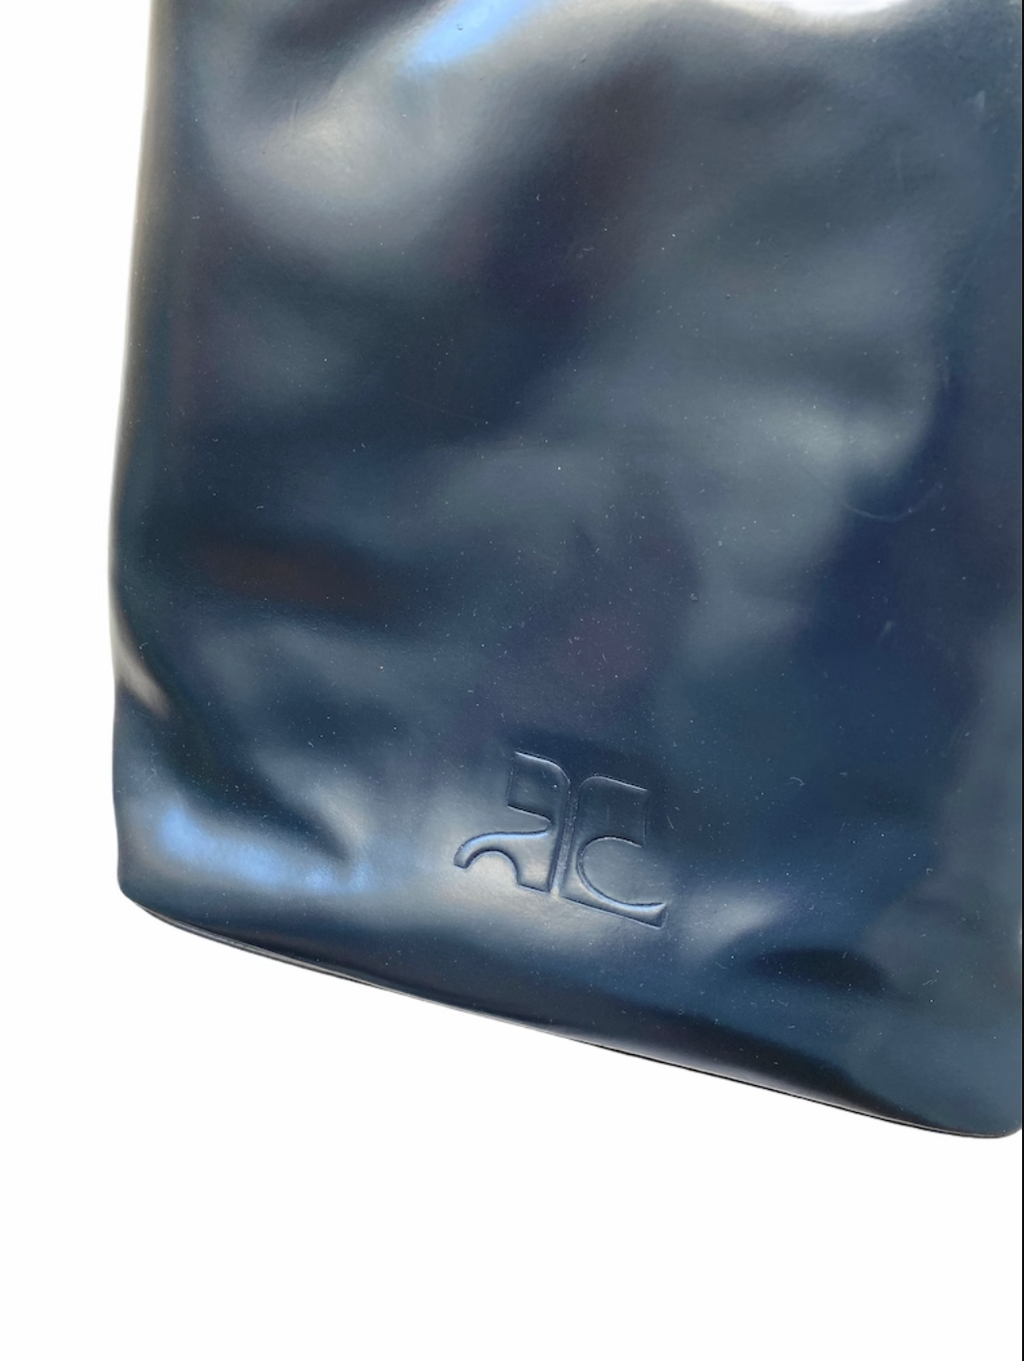 Vintage Blue Patent Leather Shoulder Bag